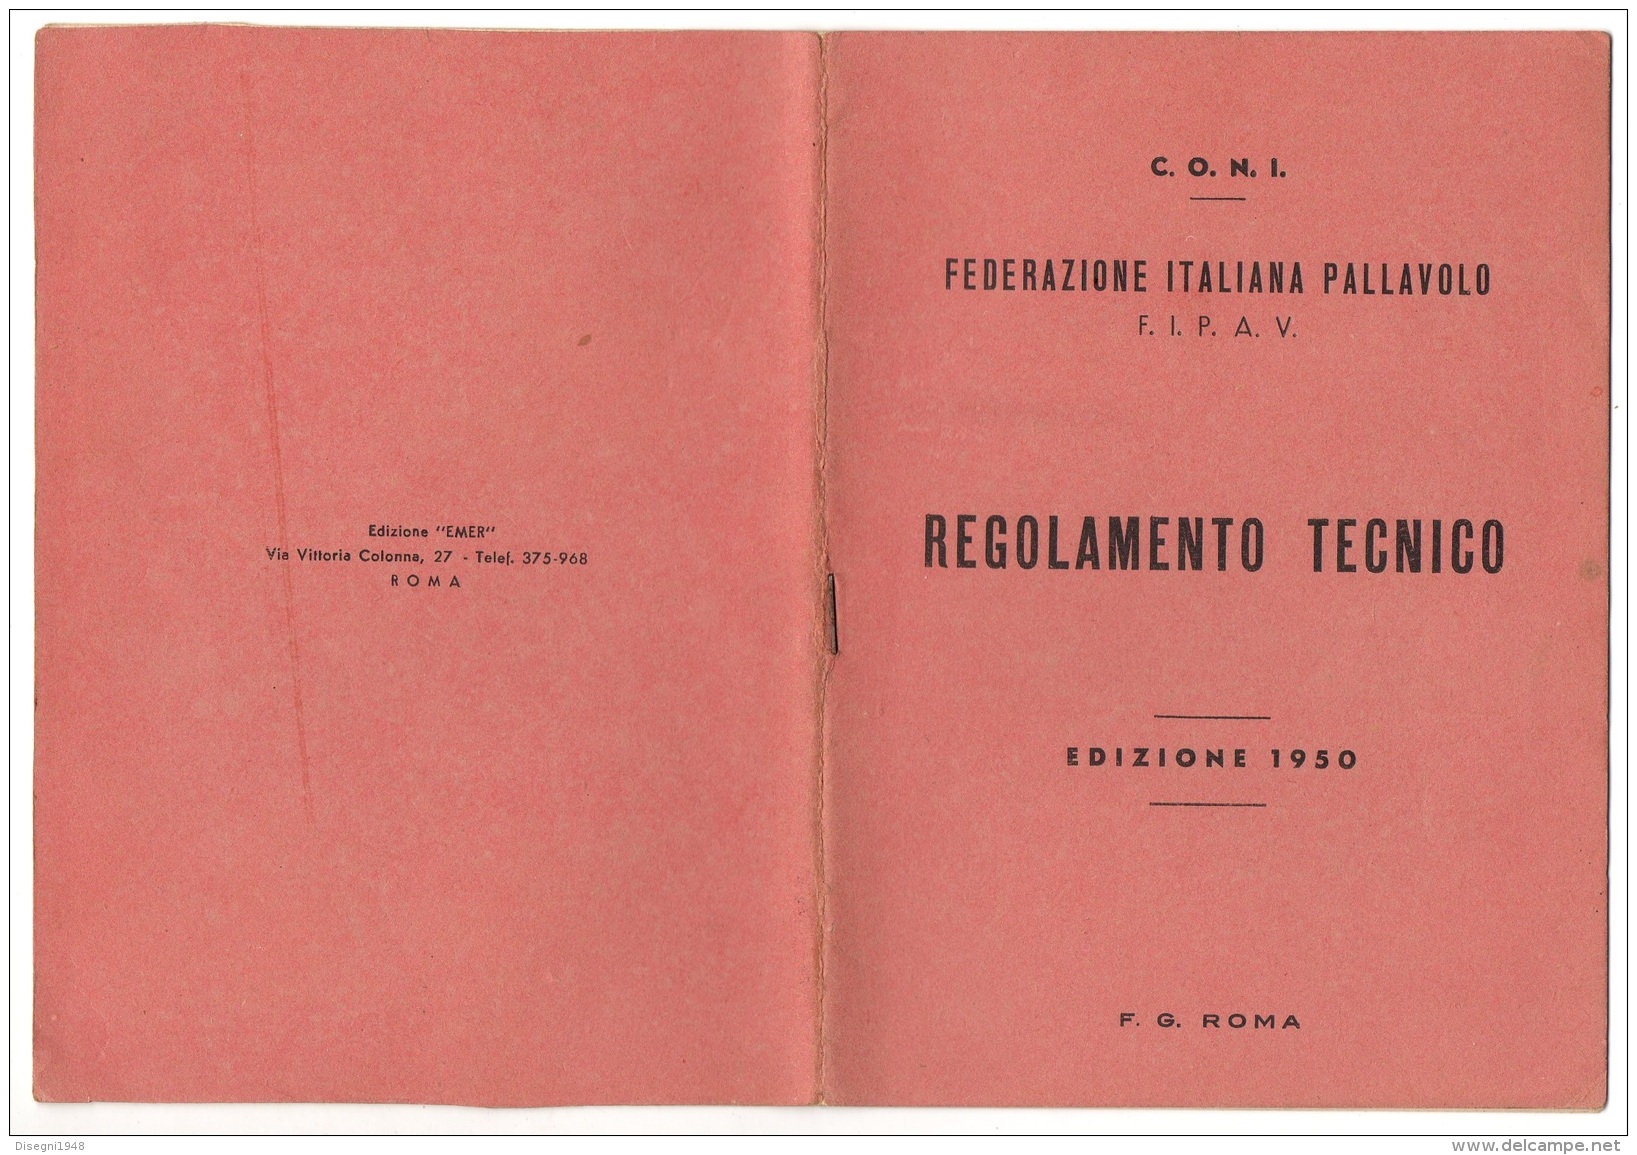 05389 "C.O.N.I. - F.I.P.A.V. - FEDERAZIONE ITALIANA PALLAVOLO - REGOLAMENTO TECNICO - EDIZIONE 1950" ORIGINALE - Sports